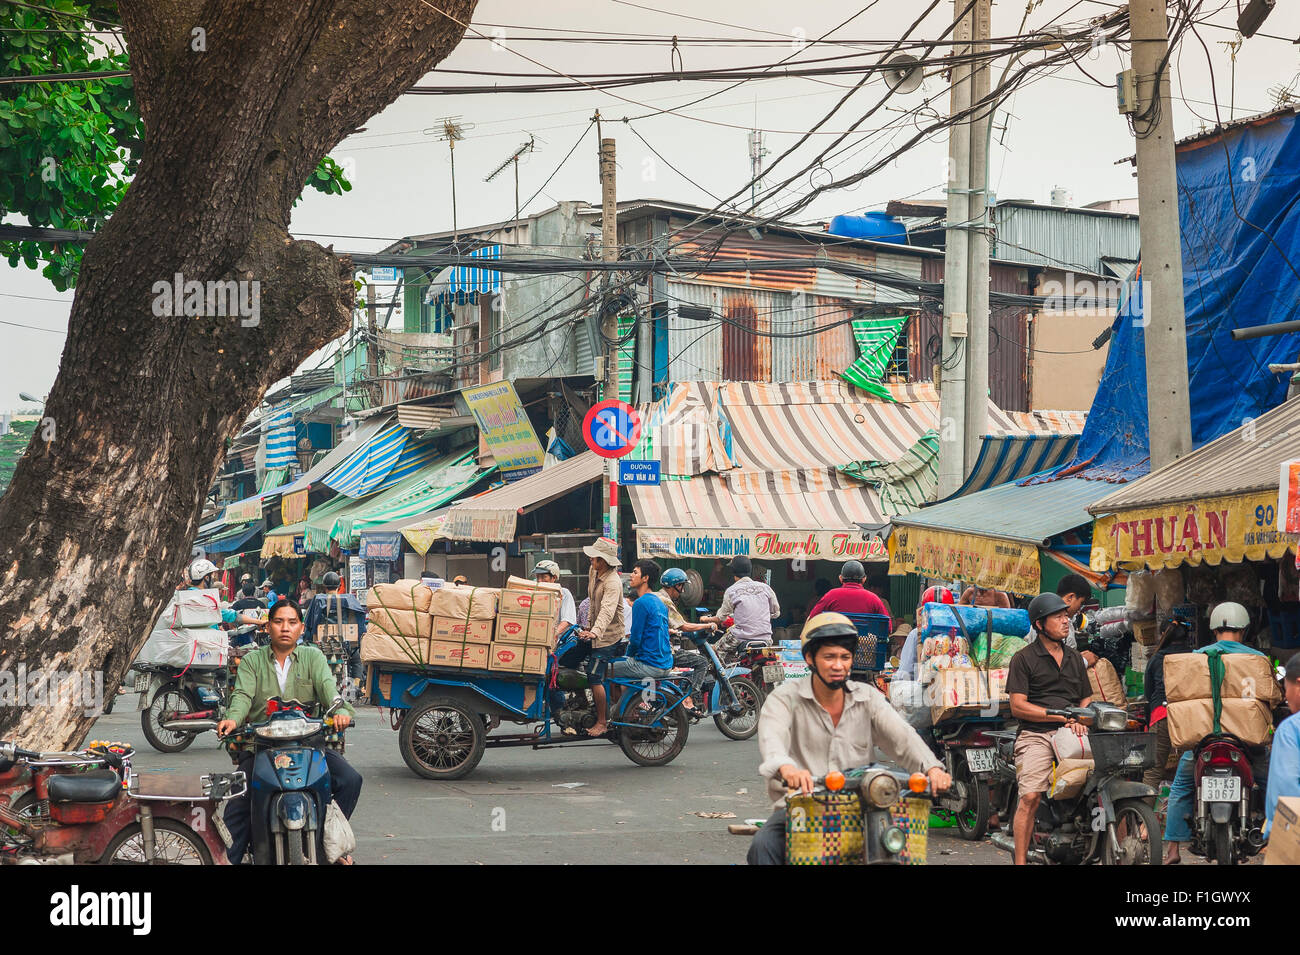 Il Vietnam street market, una strada trafficata scena nel centro cittadino di Cholon area di Ho Chi Minh City, a Saigon, Vietnam. Foto Stock